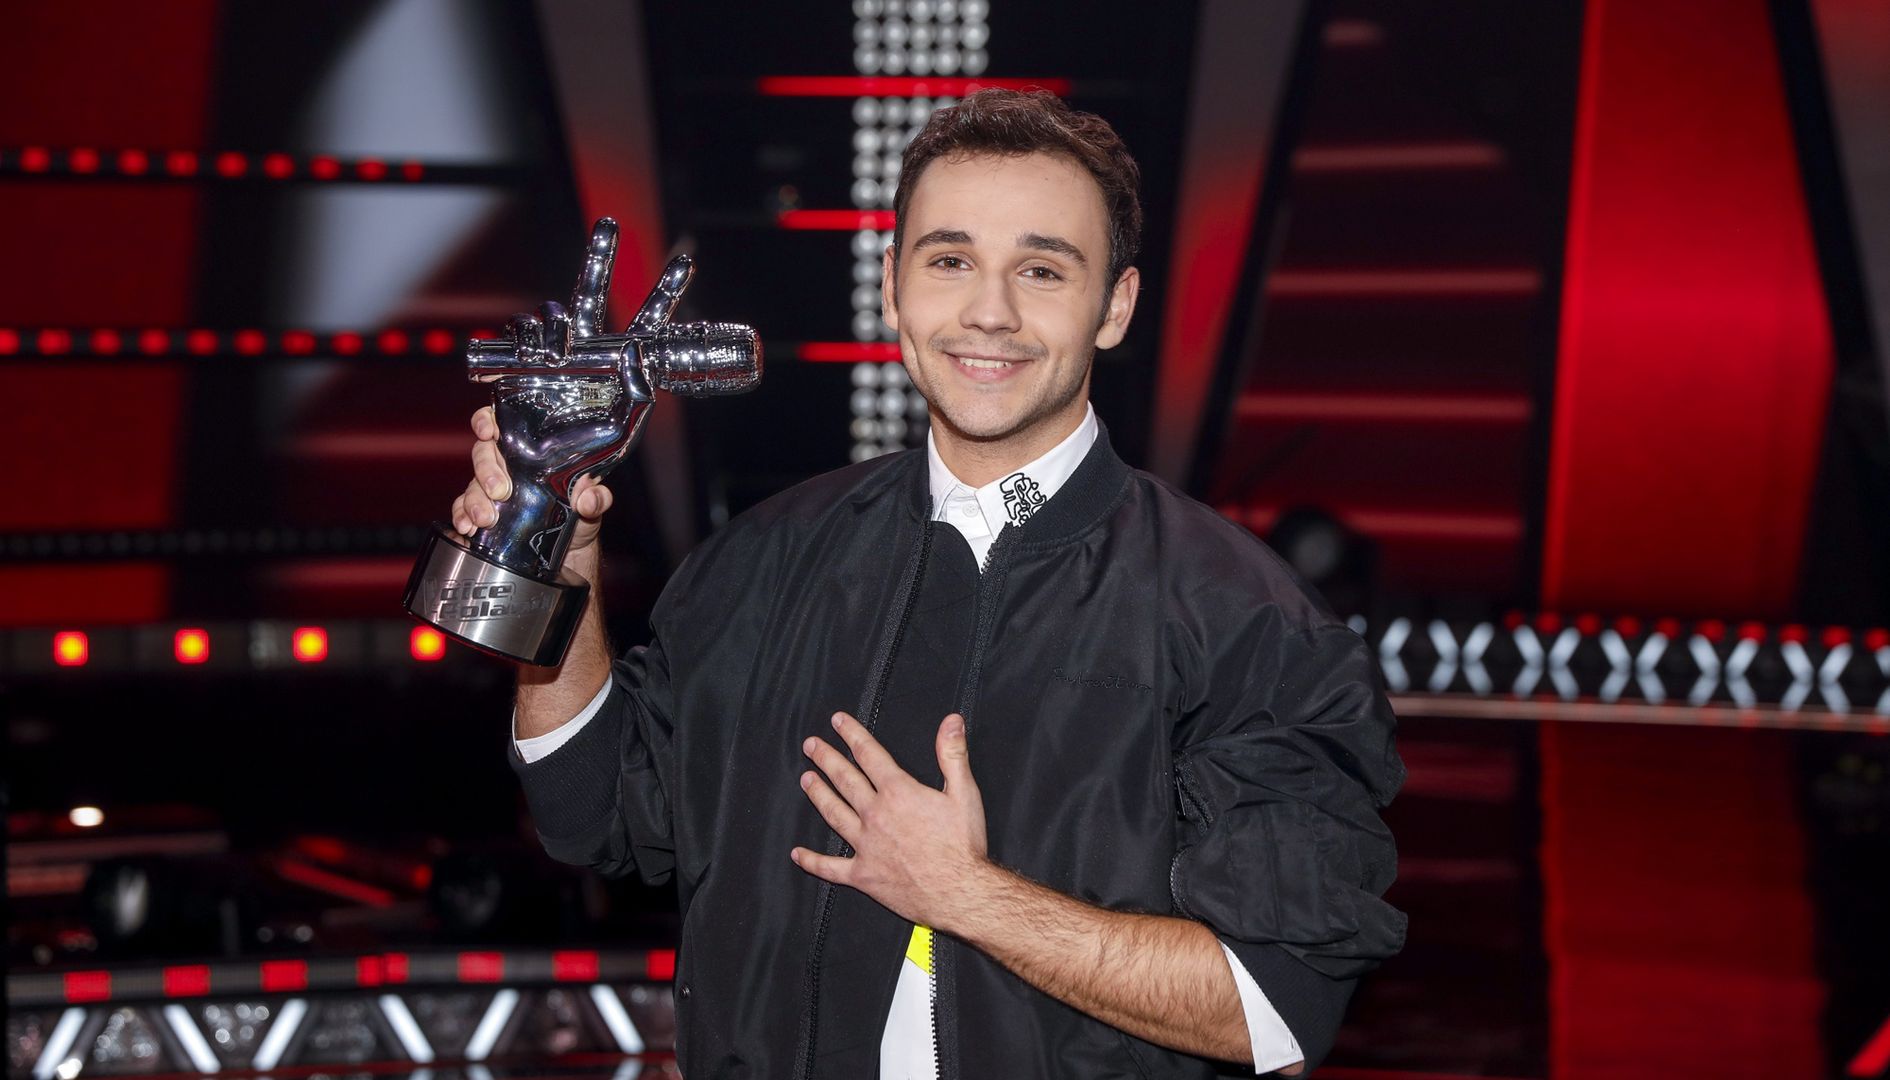 Zwycięzca "The Voice of Poland" Janek Górka: Doda byłaby świetną trenerką w naszym show